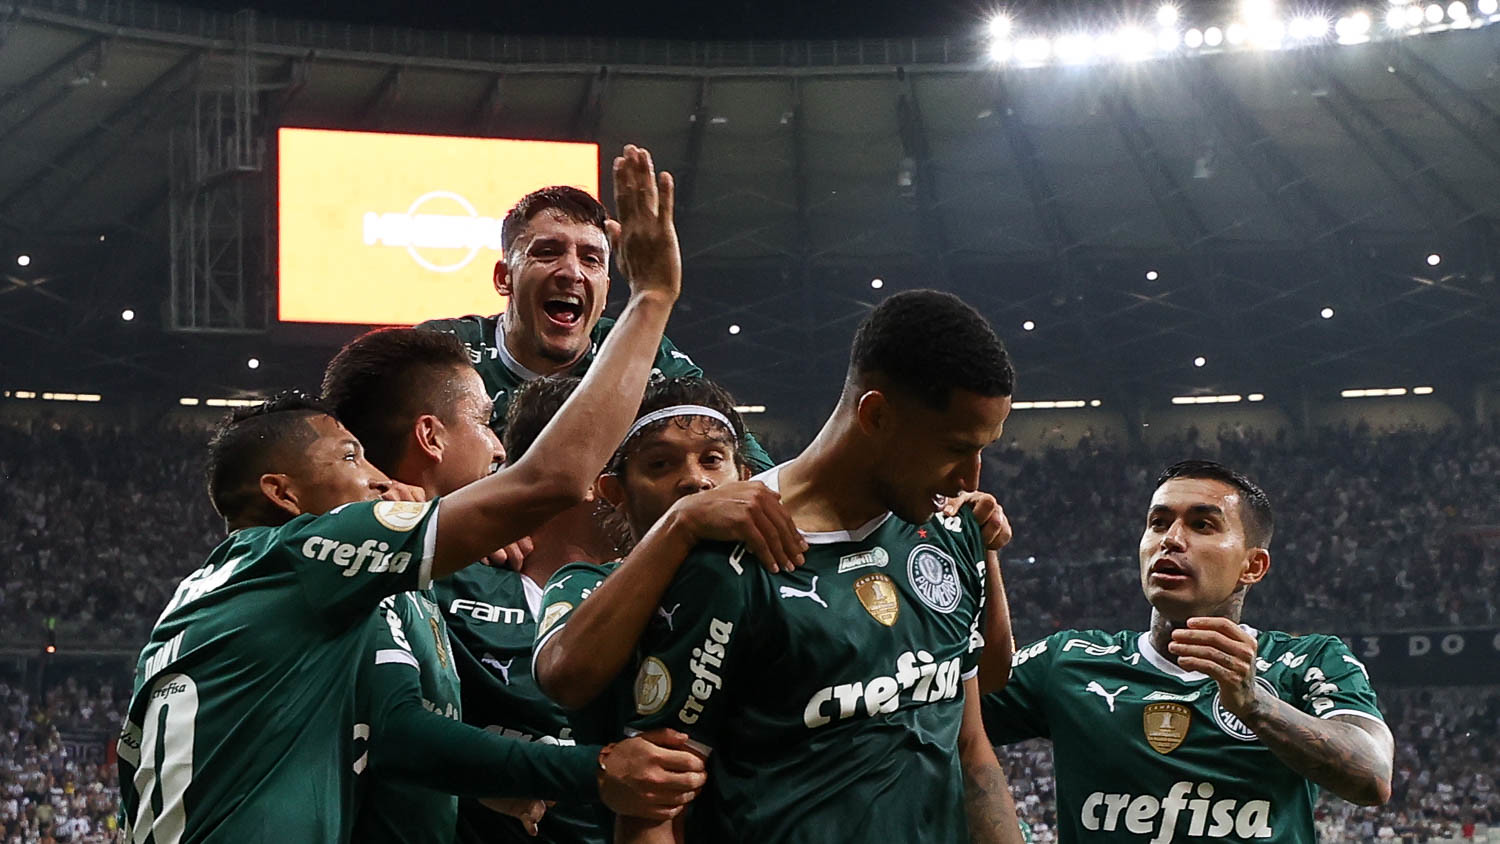 Artilheiros e garçons do Palmeiras que brilharam no Brasileirão